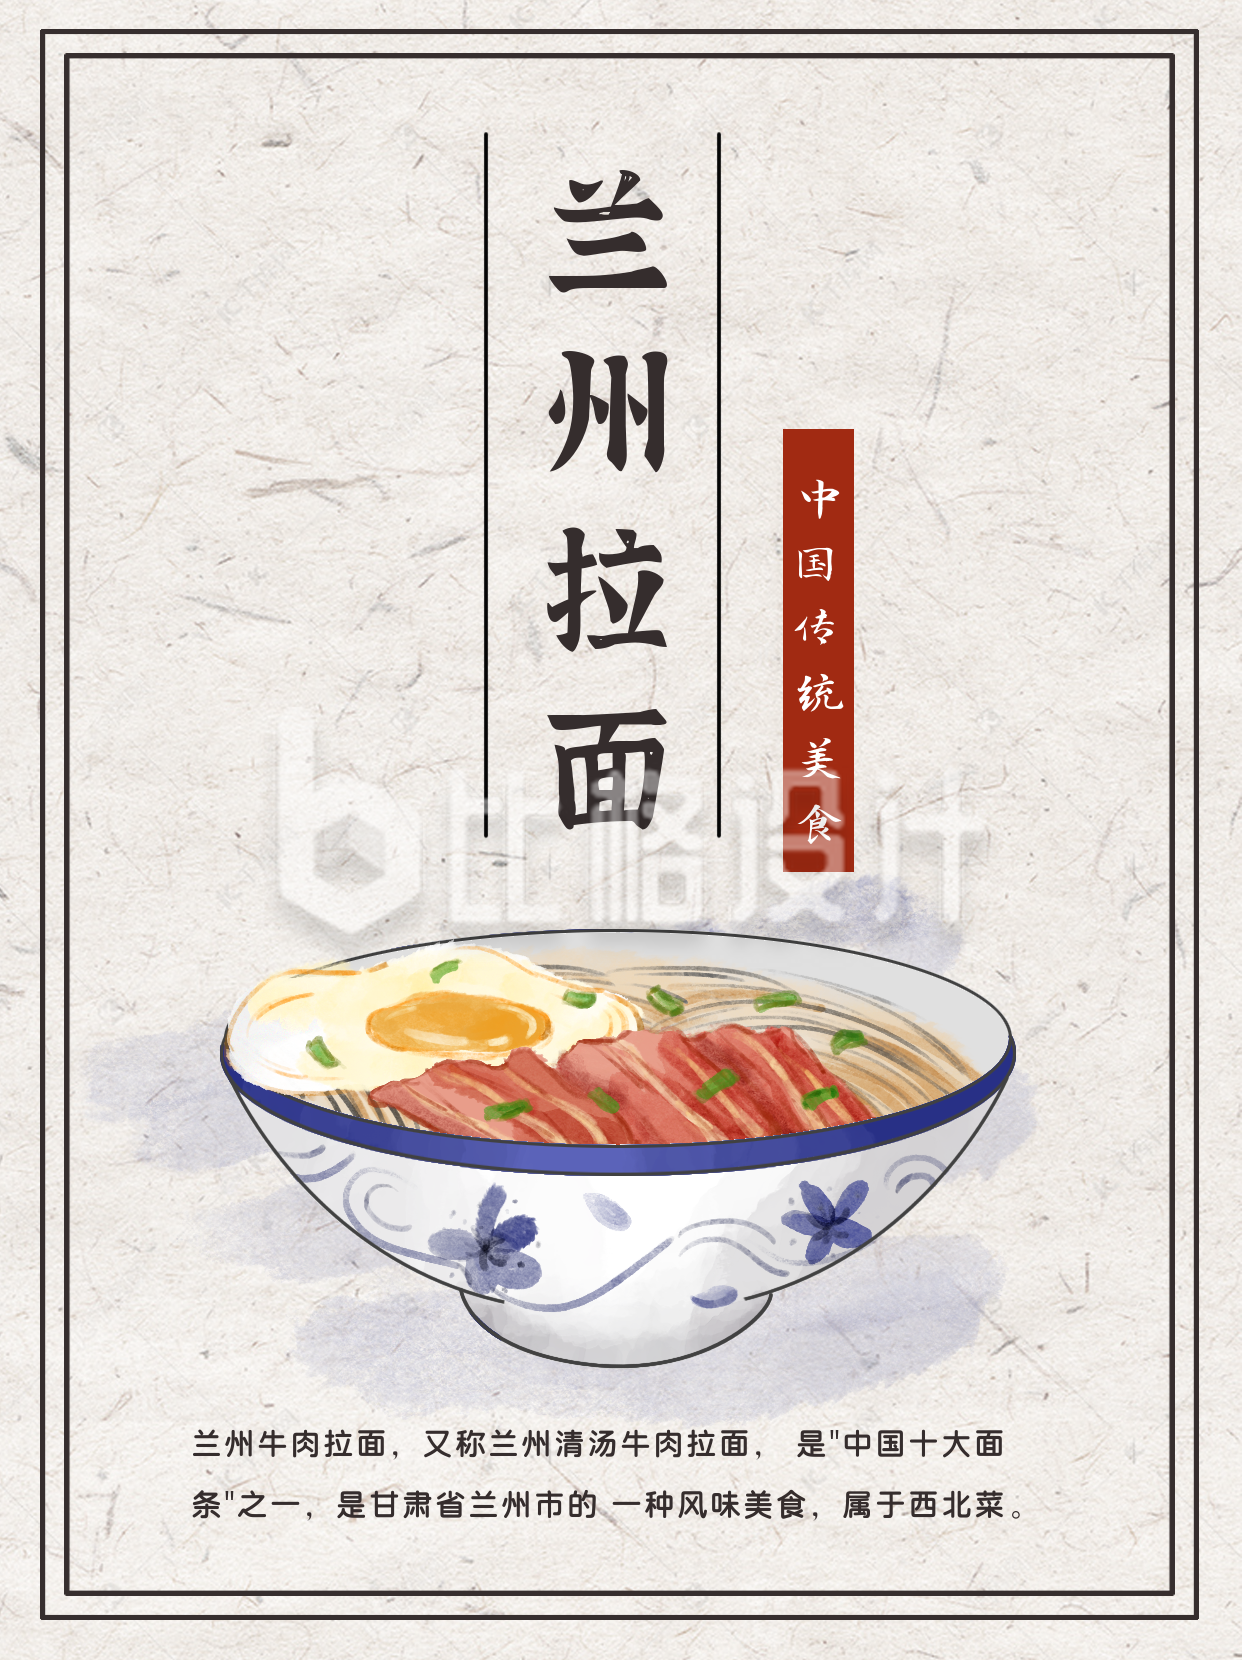 兰州拉面中国风手绘美食小红书封面